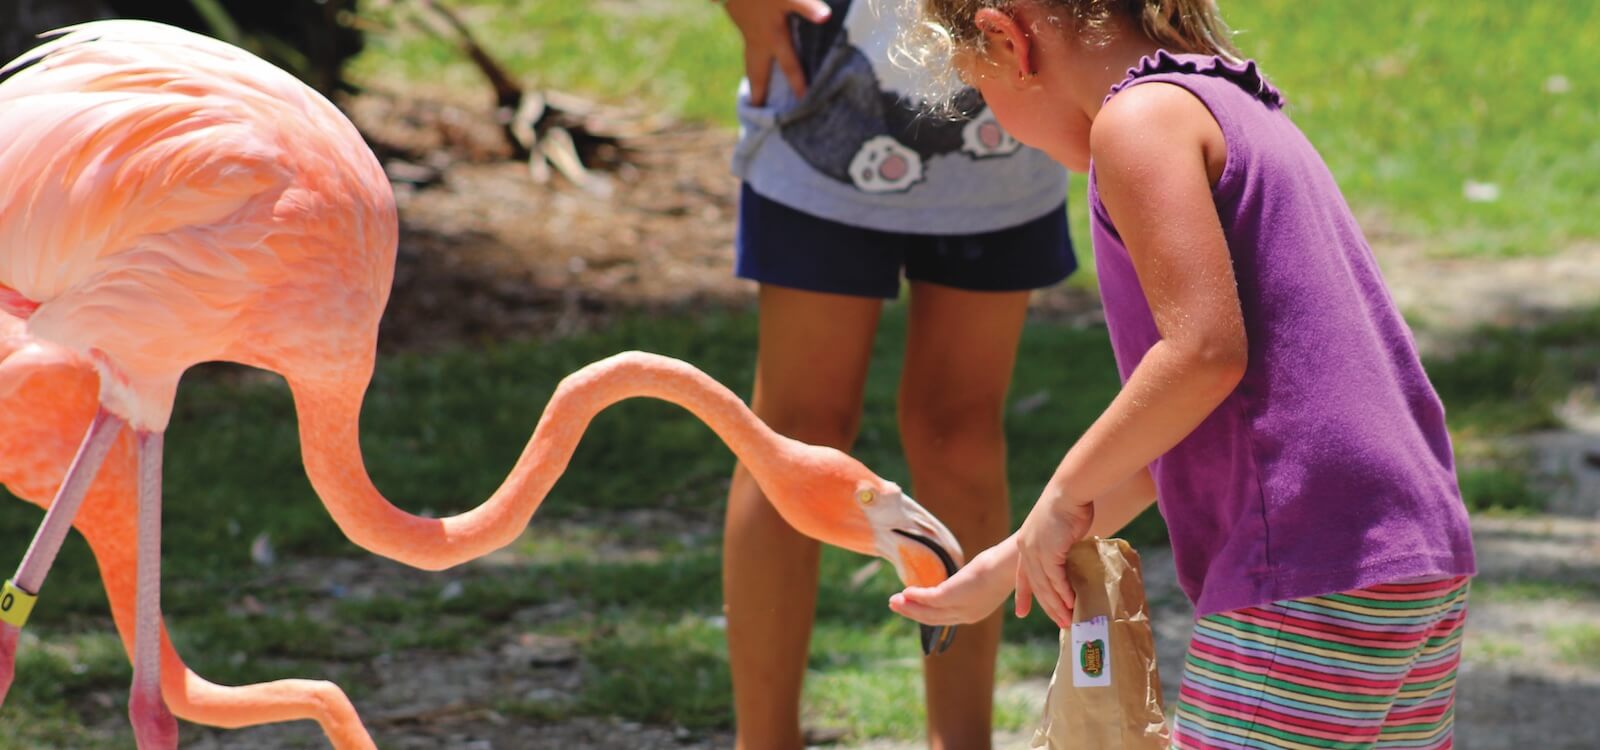 MustDo.com | Kids can hand-feed the flock of flamingos at Sarasota Jungle Gardens in Sarasota, Florida.